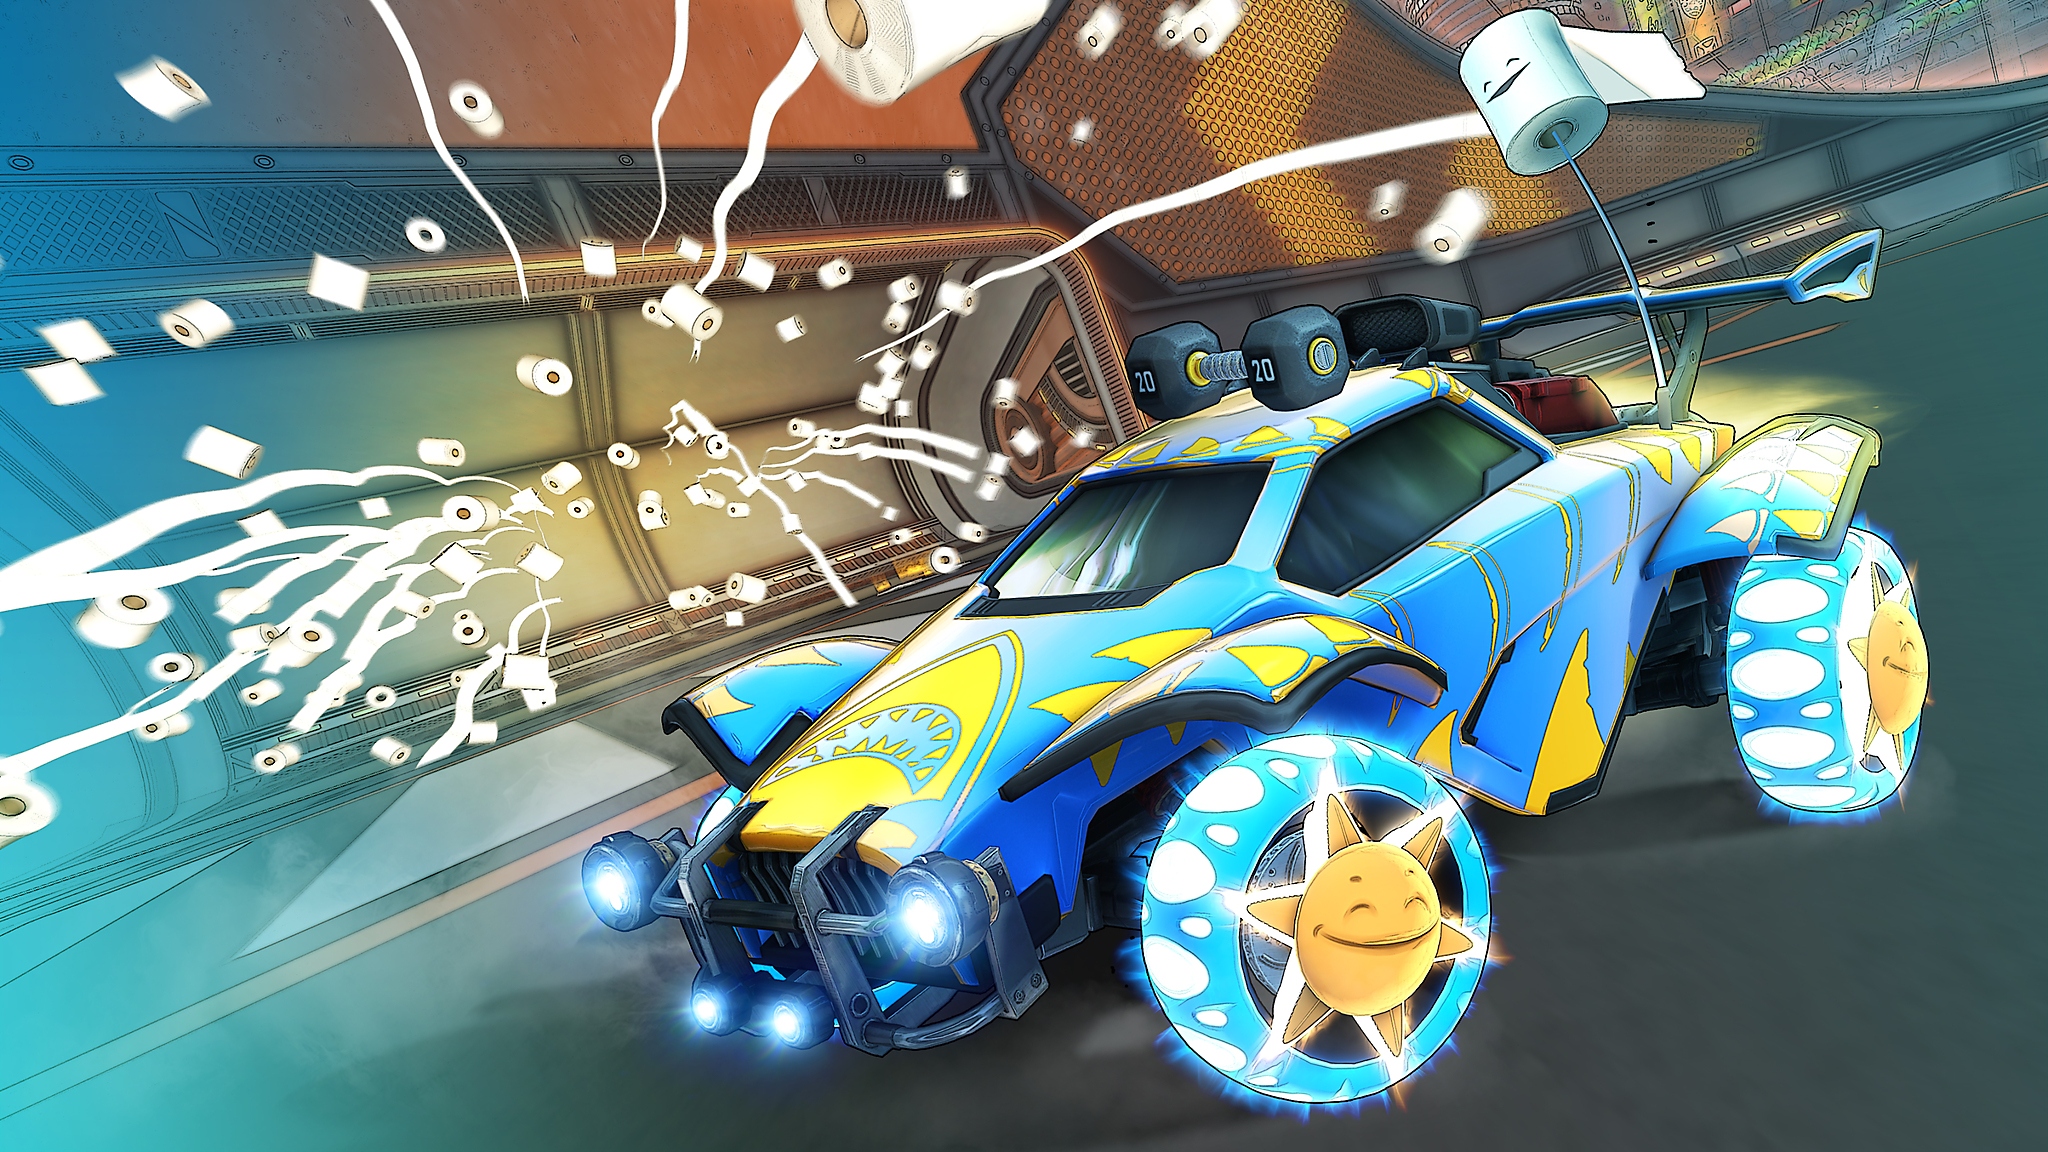 Rocket League - Capture d'écran de la saison 6 montrant une voiture bleue et une voiture jaune avec de nombreux rouleaux de papier toilette lancés dans les airs